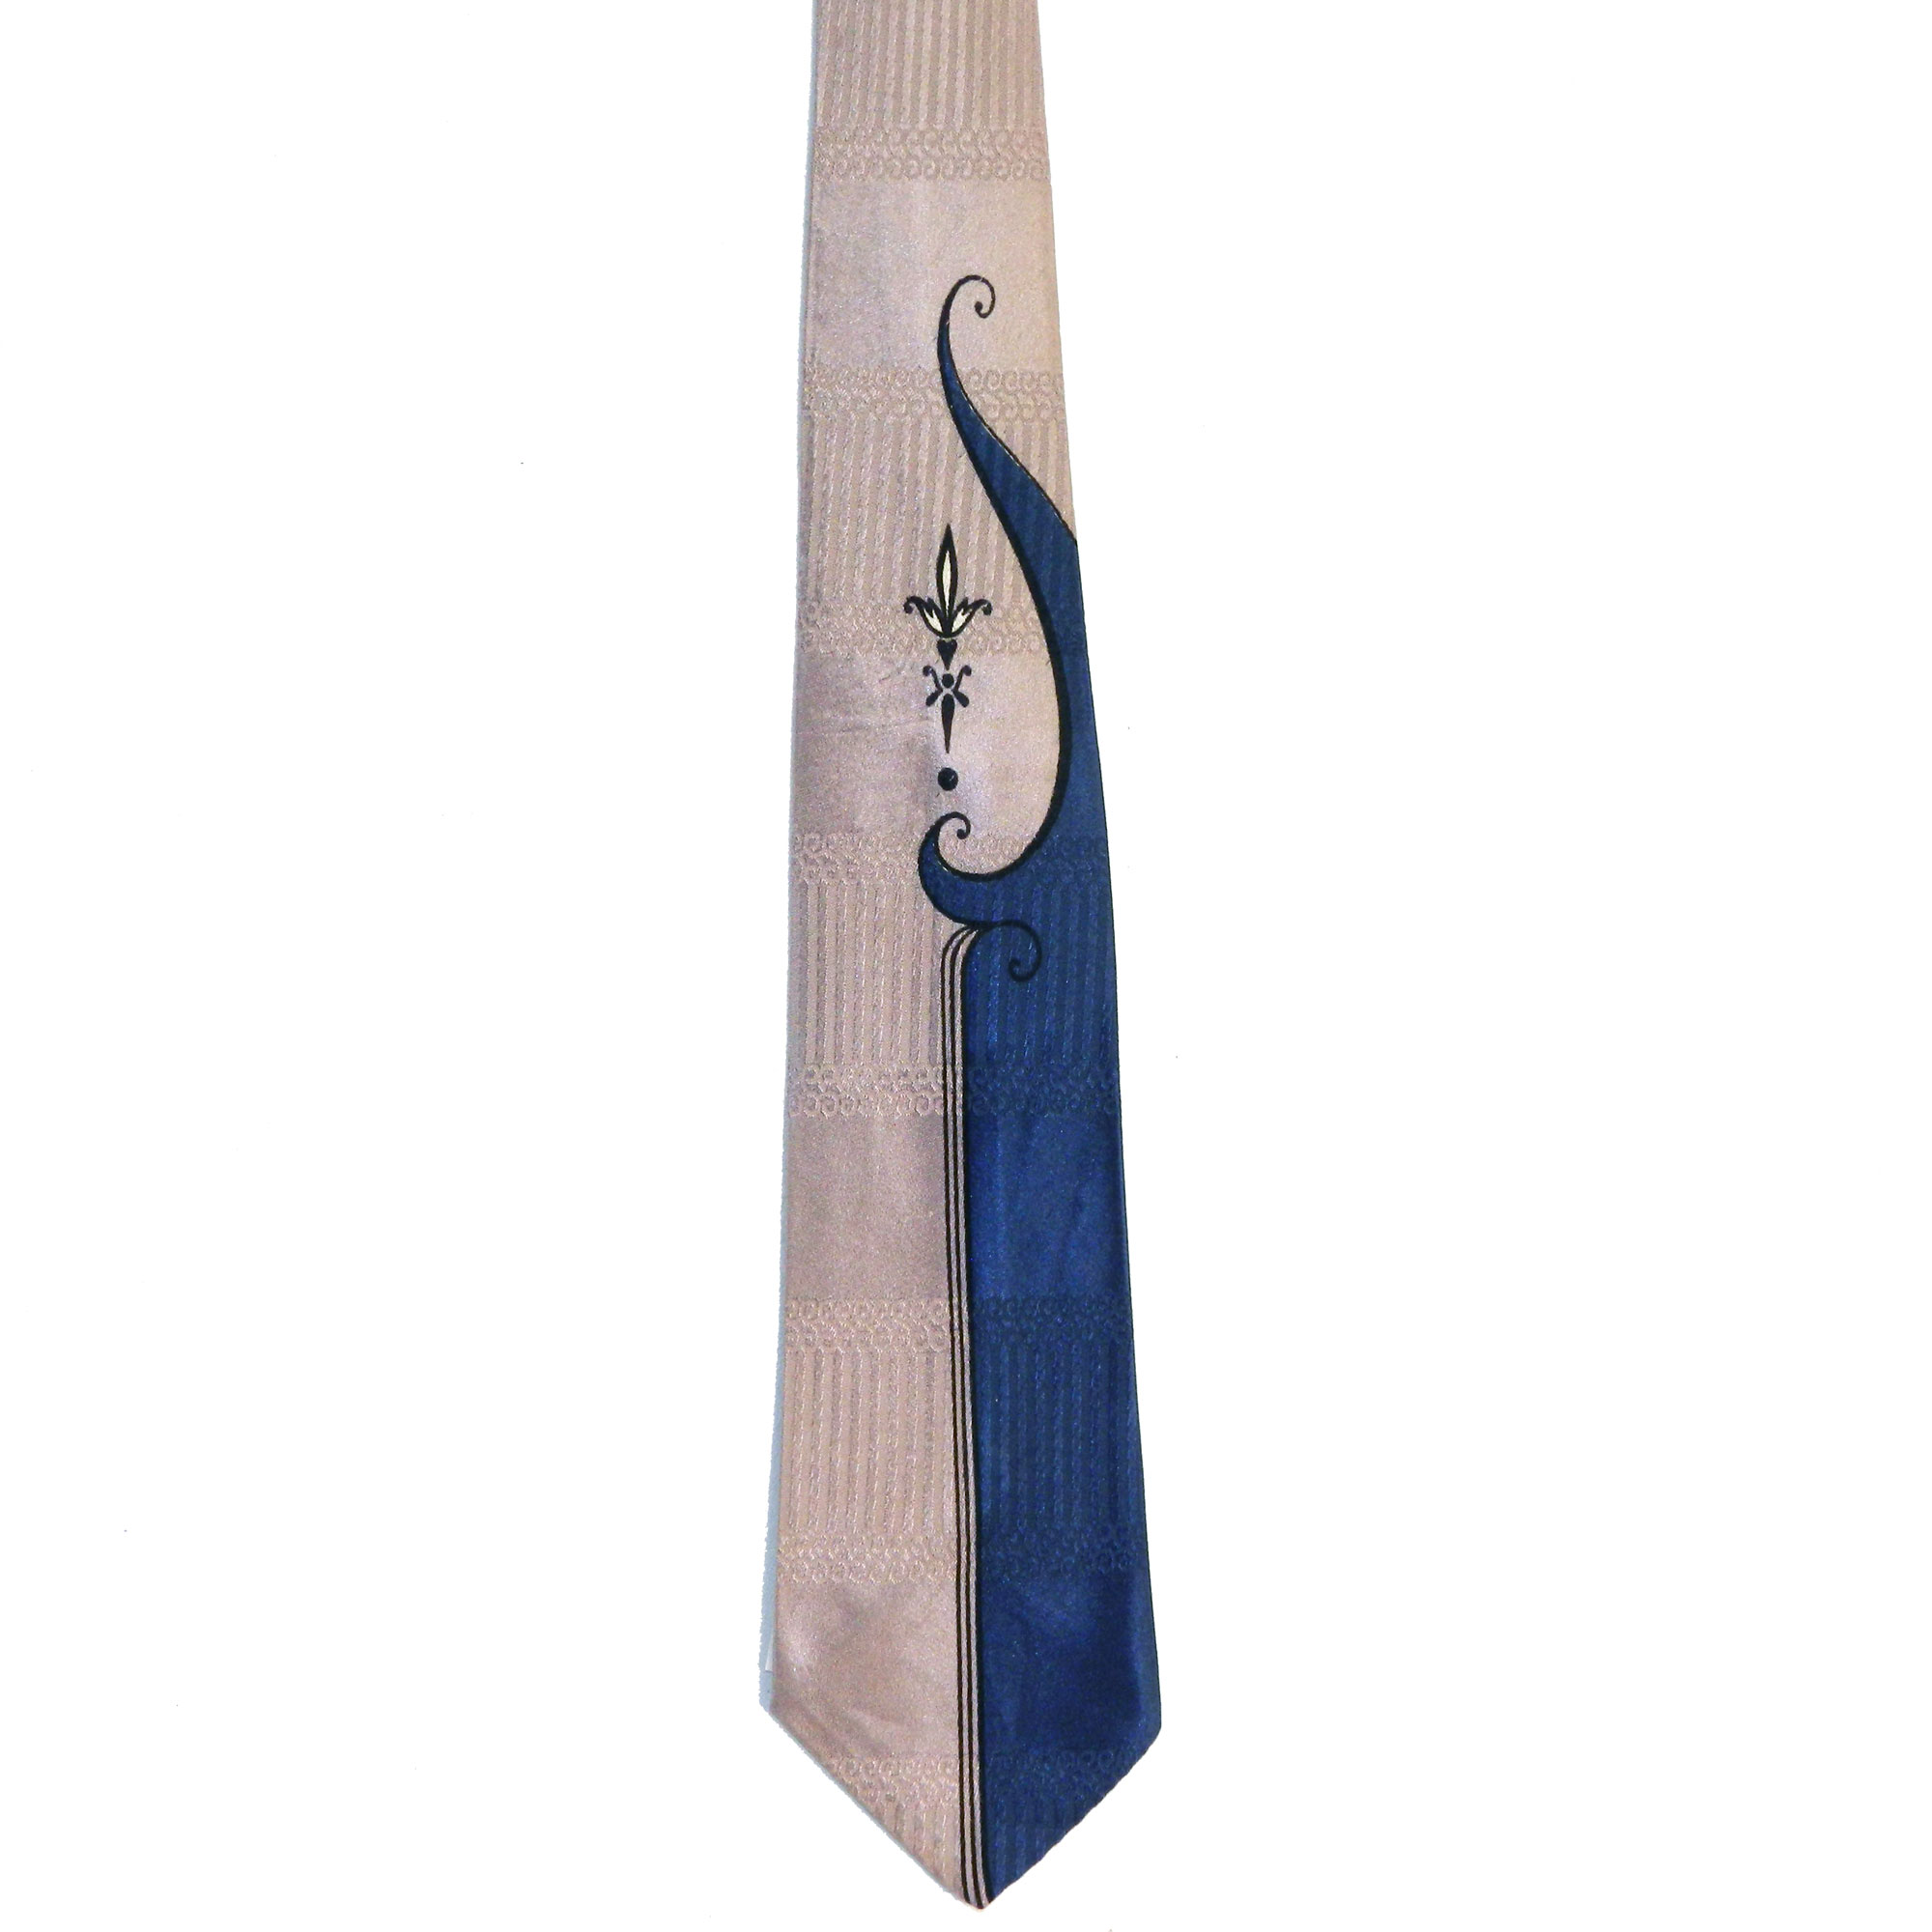 1950s Art Deco tie